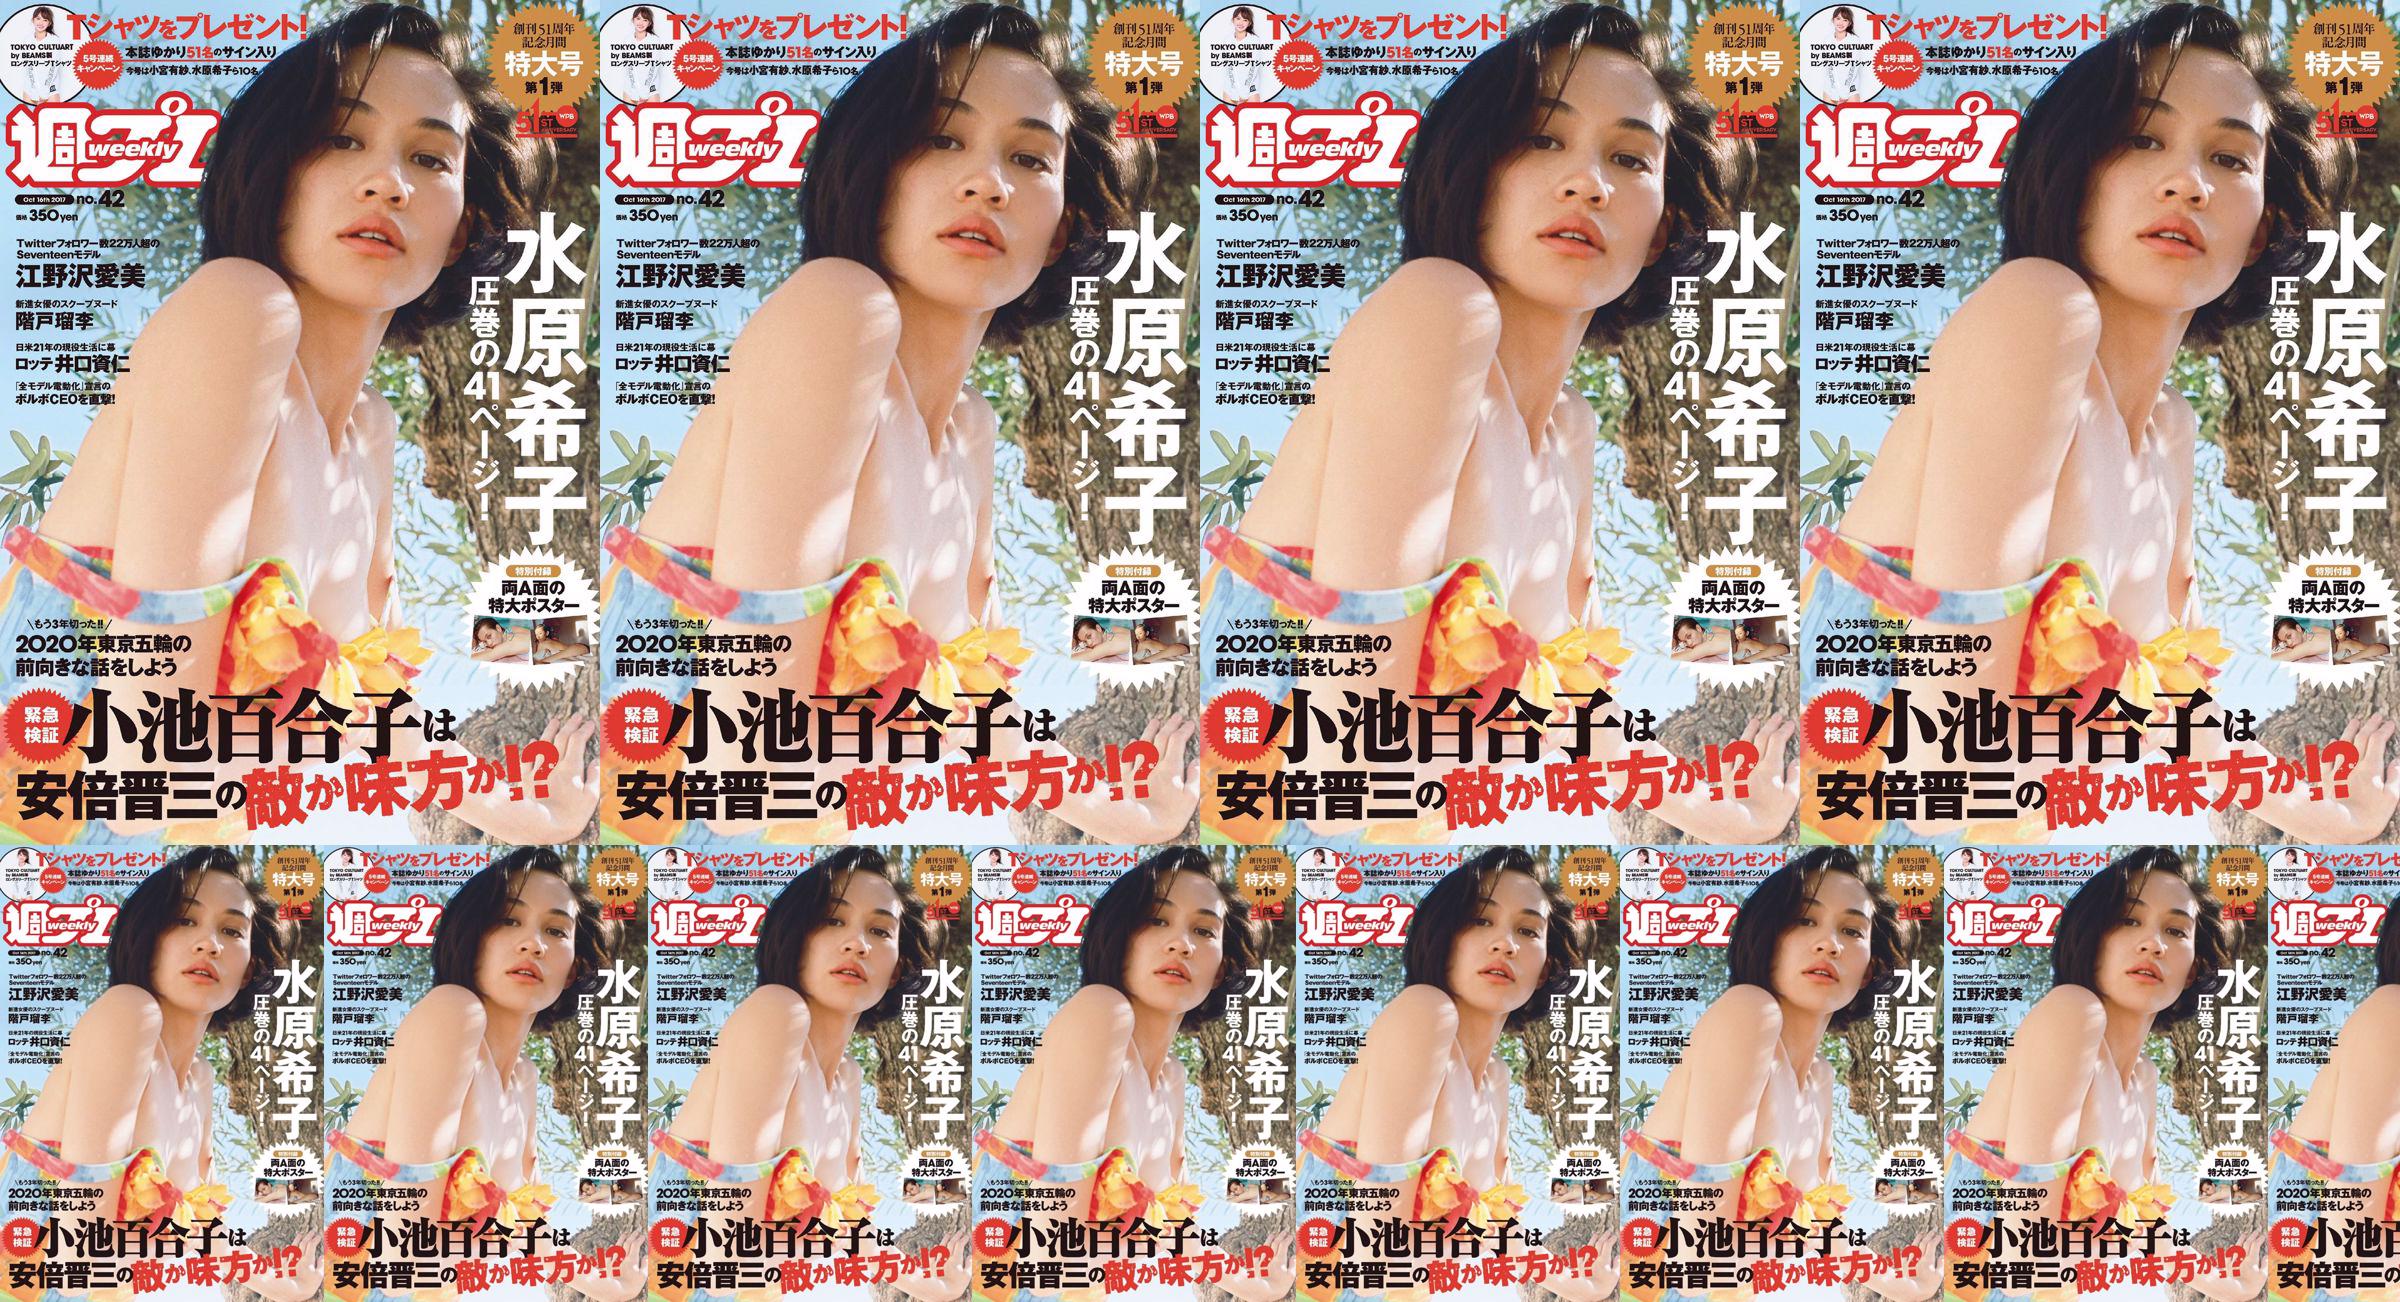 Kiko Mizuhara Manami Enosawa Serina Fukui Miu Nakamura Ruri Shinato [Weekly Playboy] 2017 No.42 Photo Magazine No.574a75 Trang 17